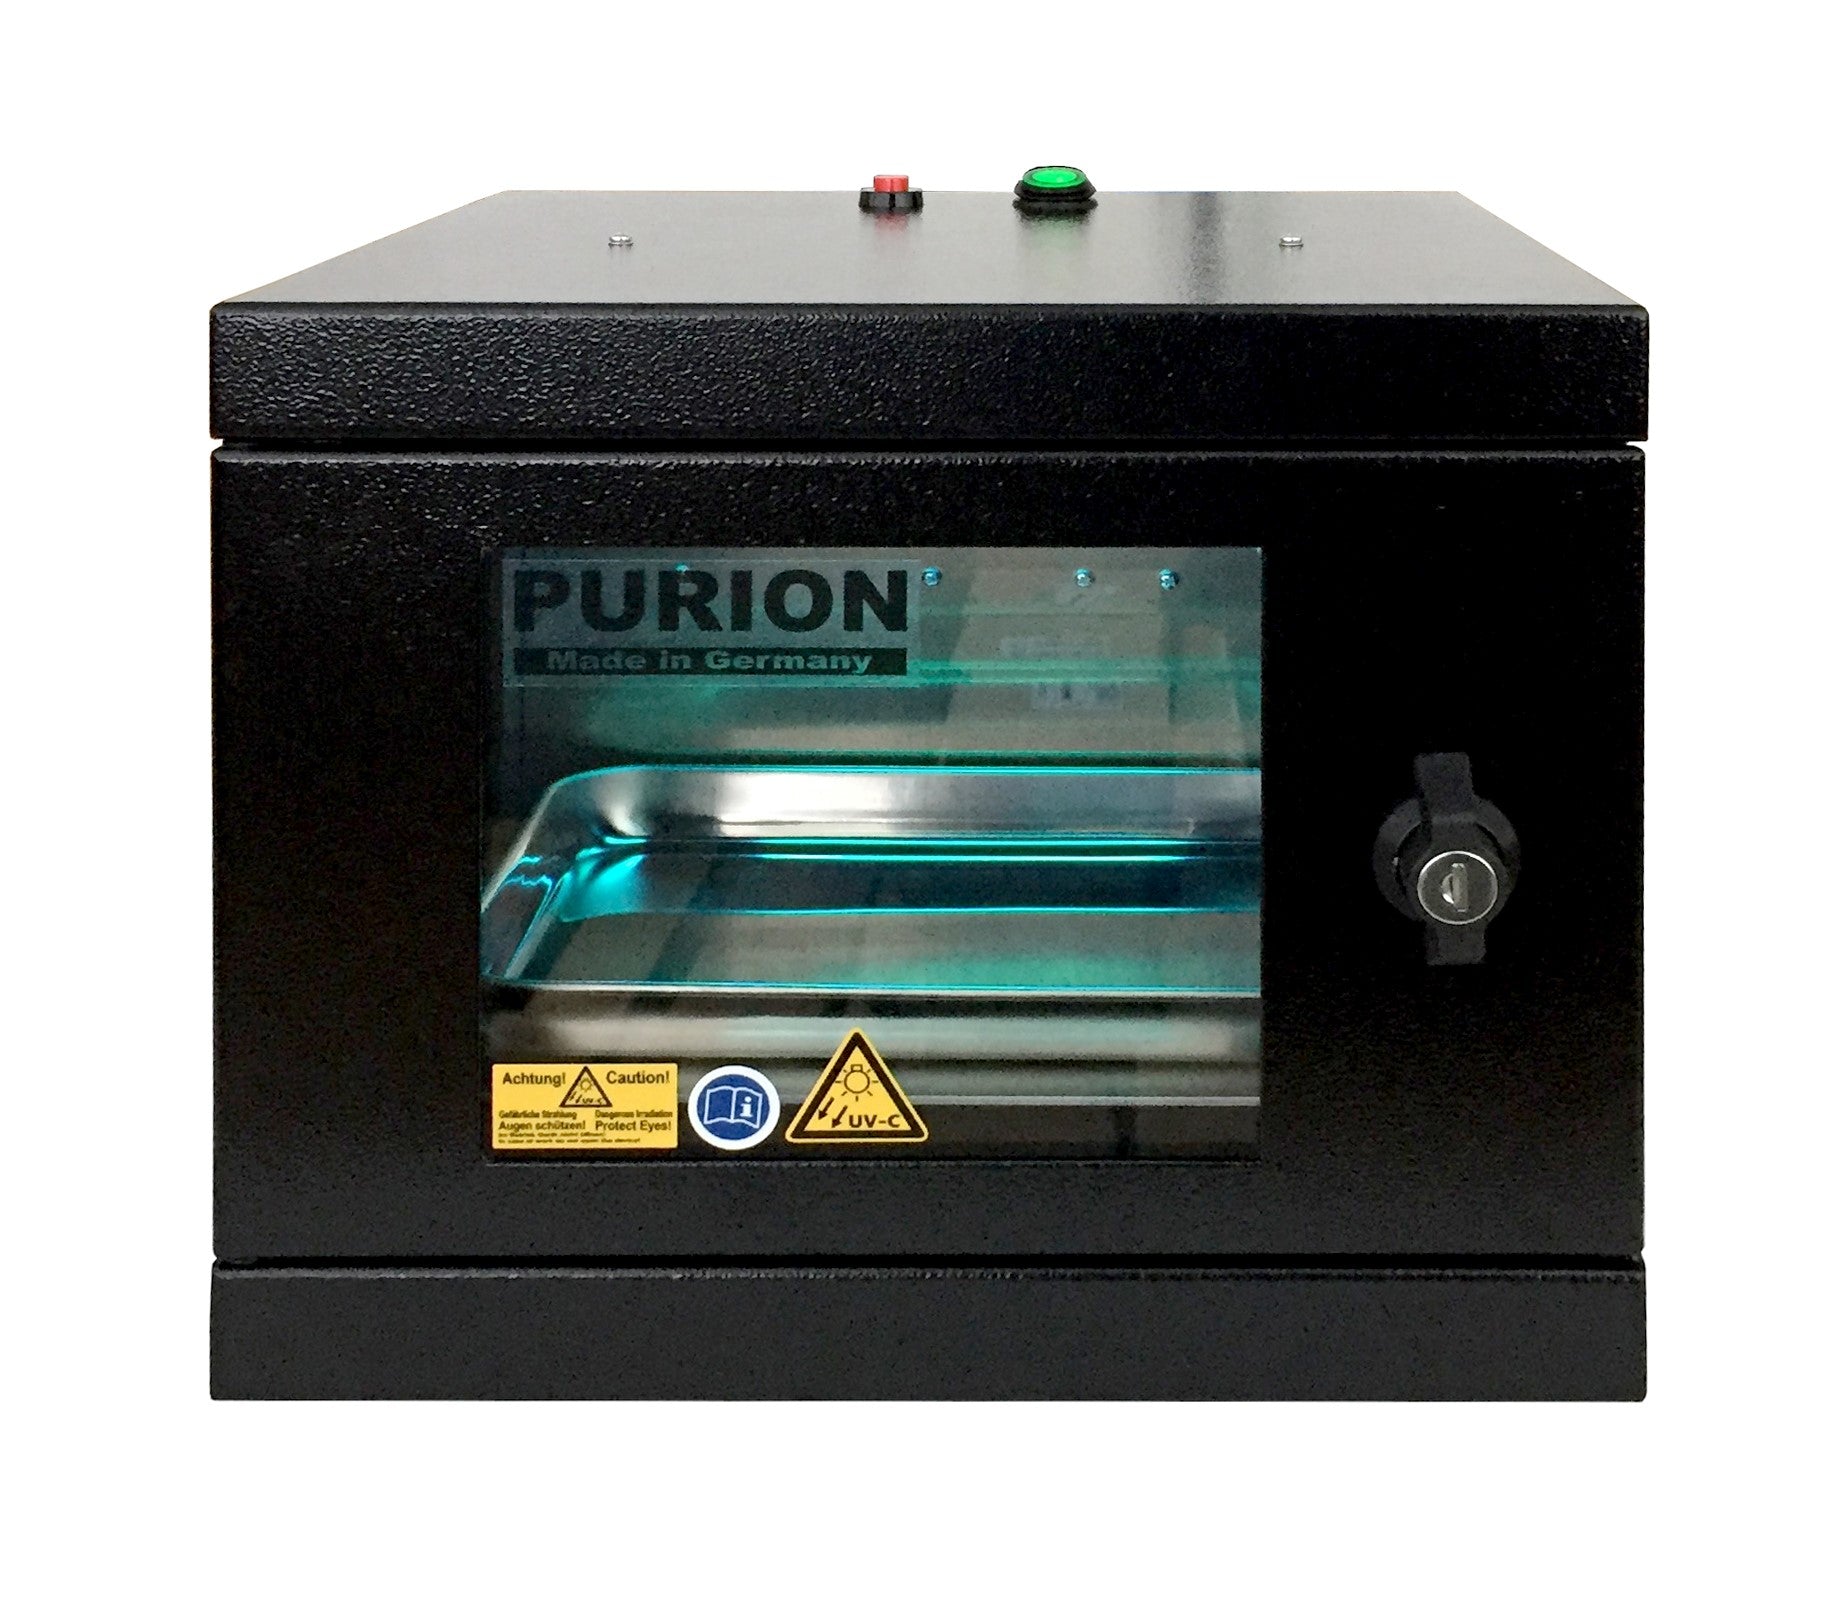 Eine PURION UVC-Box Small Basic, die speziell für die Desinfektion und Beseitigung von Keimen entwickelt wurde und auch als UVC-Box bekannt ist. Auf der Außenseite der Maschine ist deutlich der Schriftzug „PURION“ zu sehen.